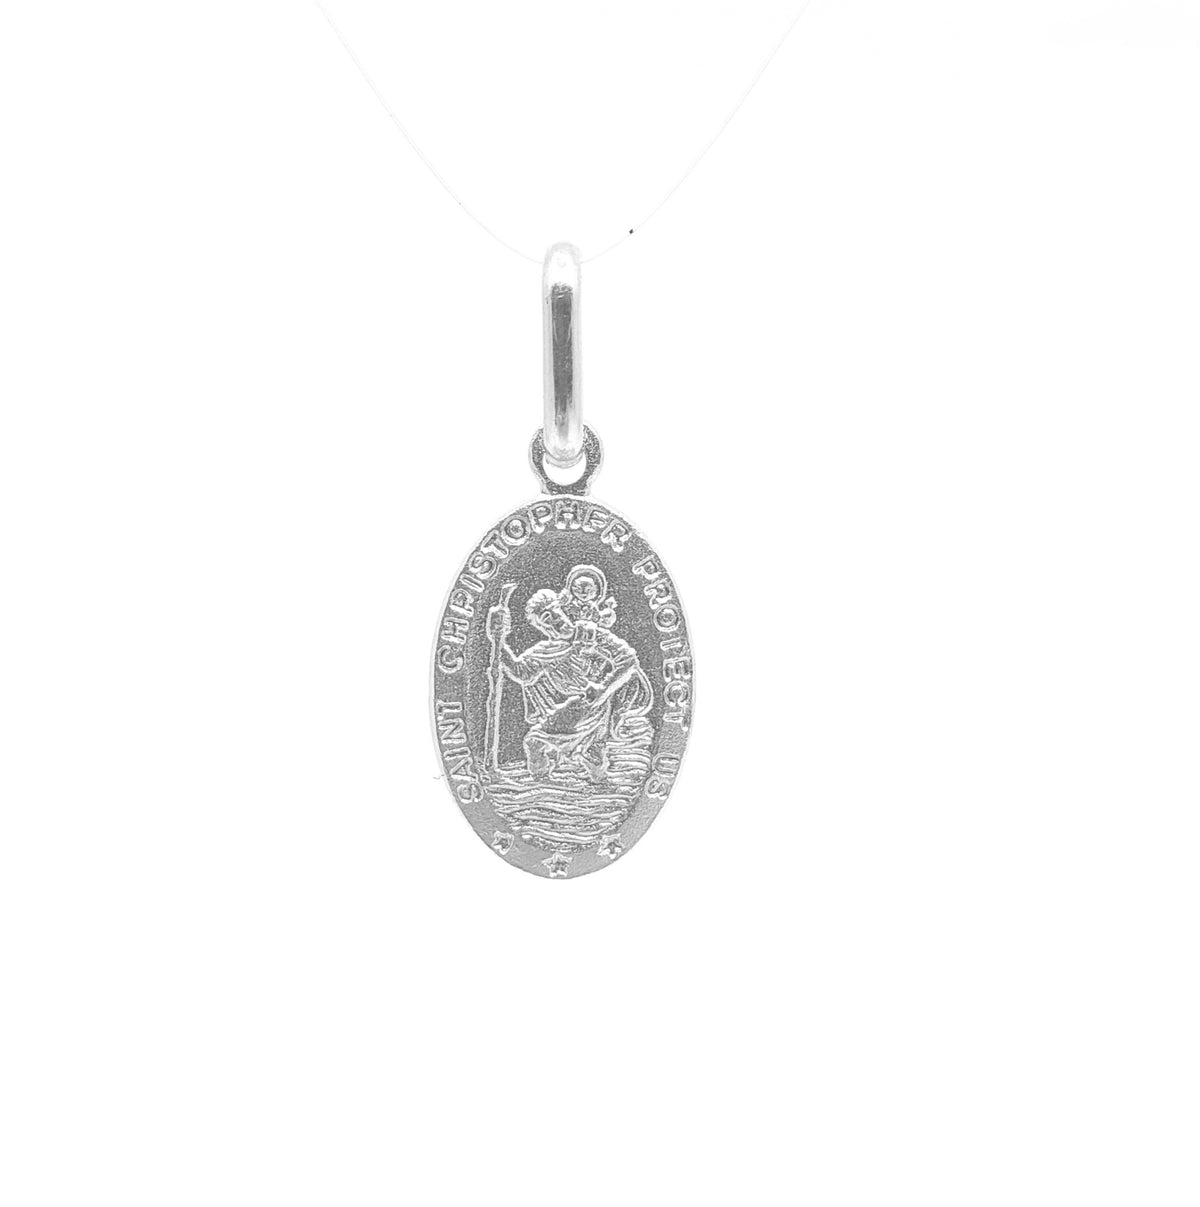 Colgante de San Cristóbal detallado con forma ovalada de plata de ley 925, 15,2 mm x 8,8 mm